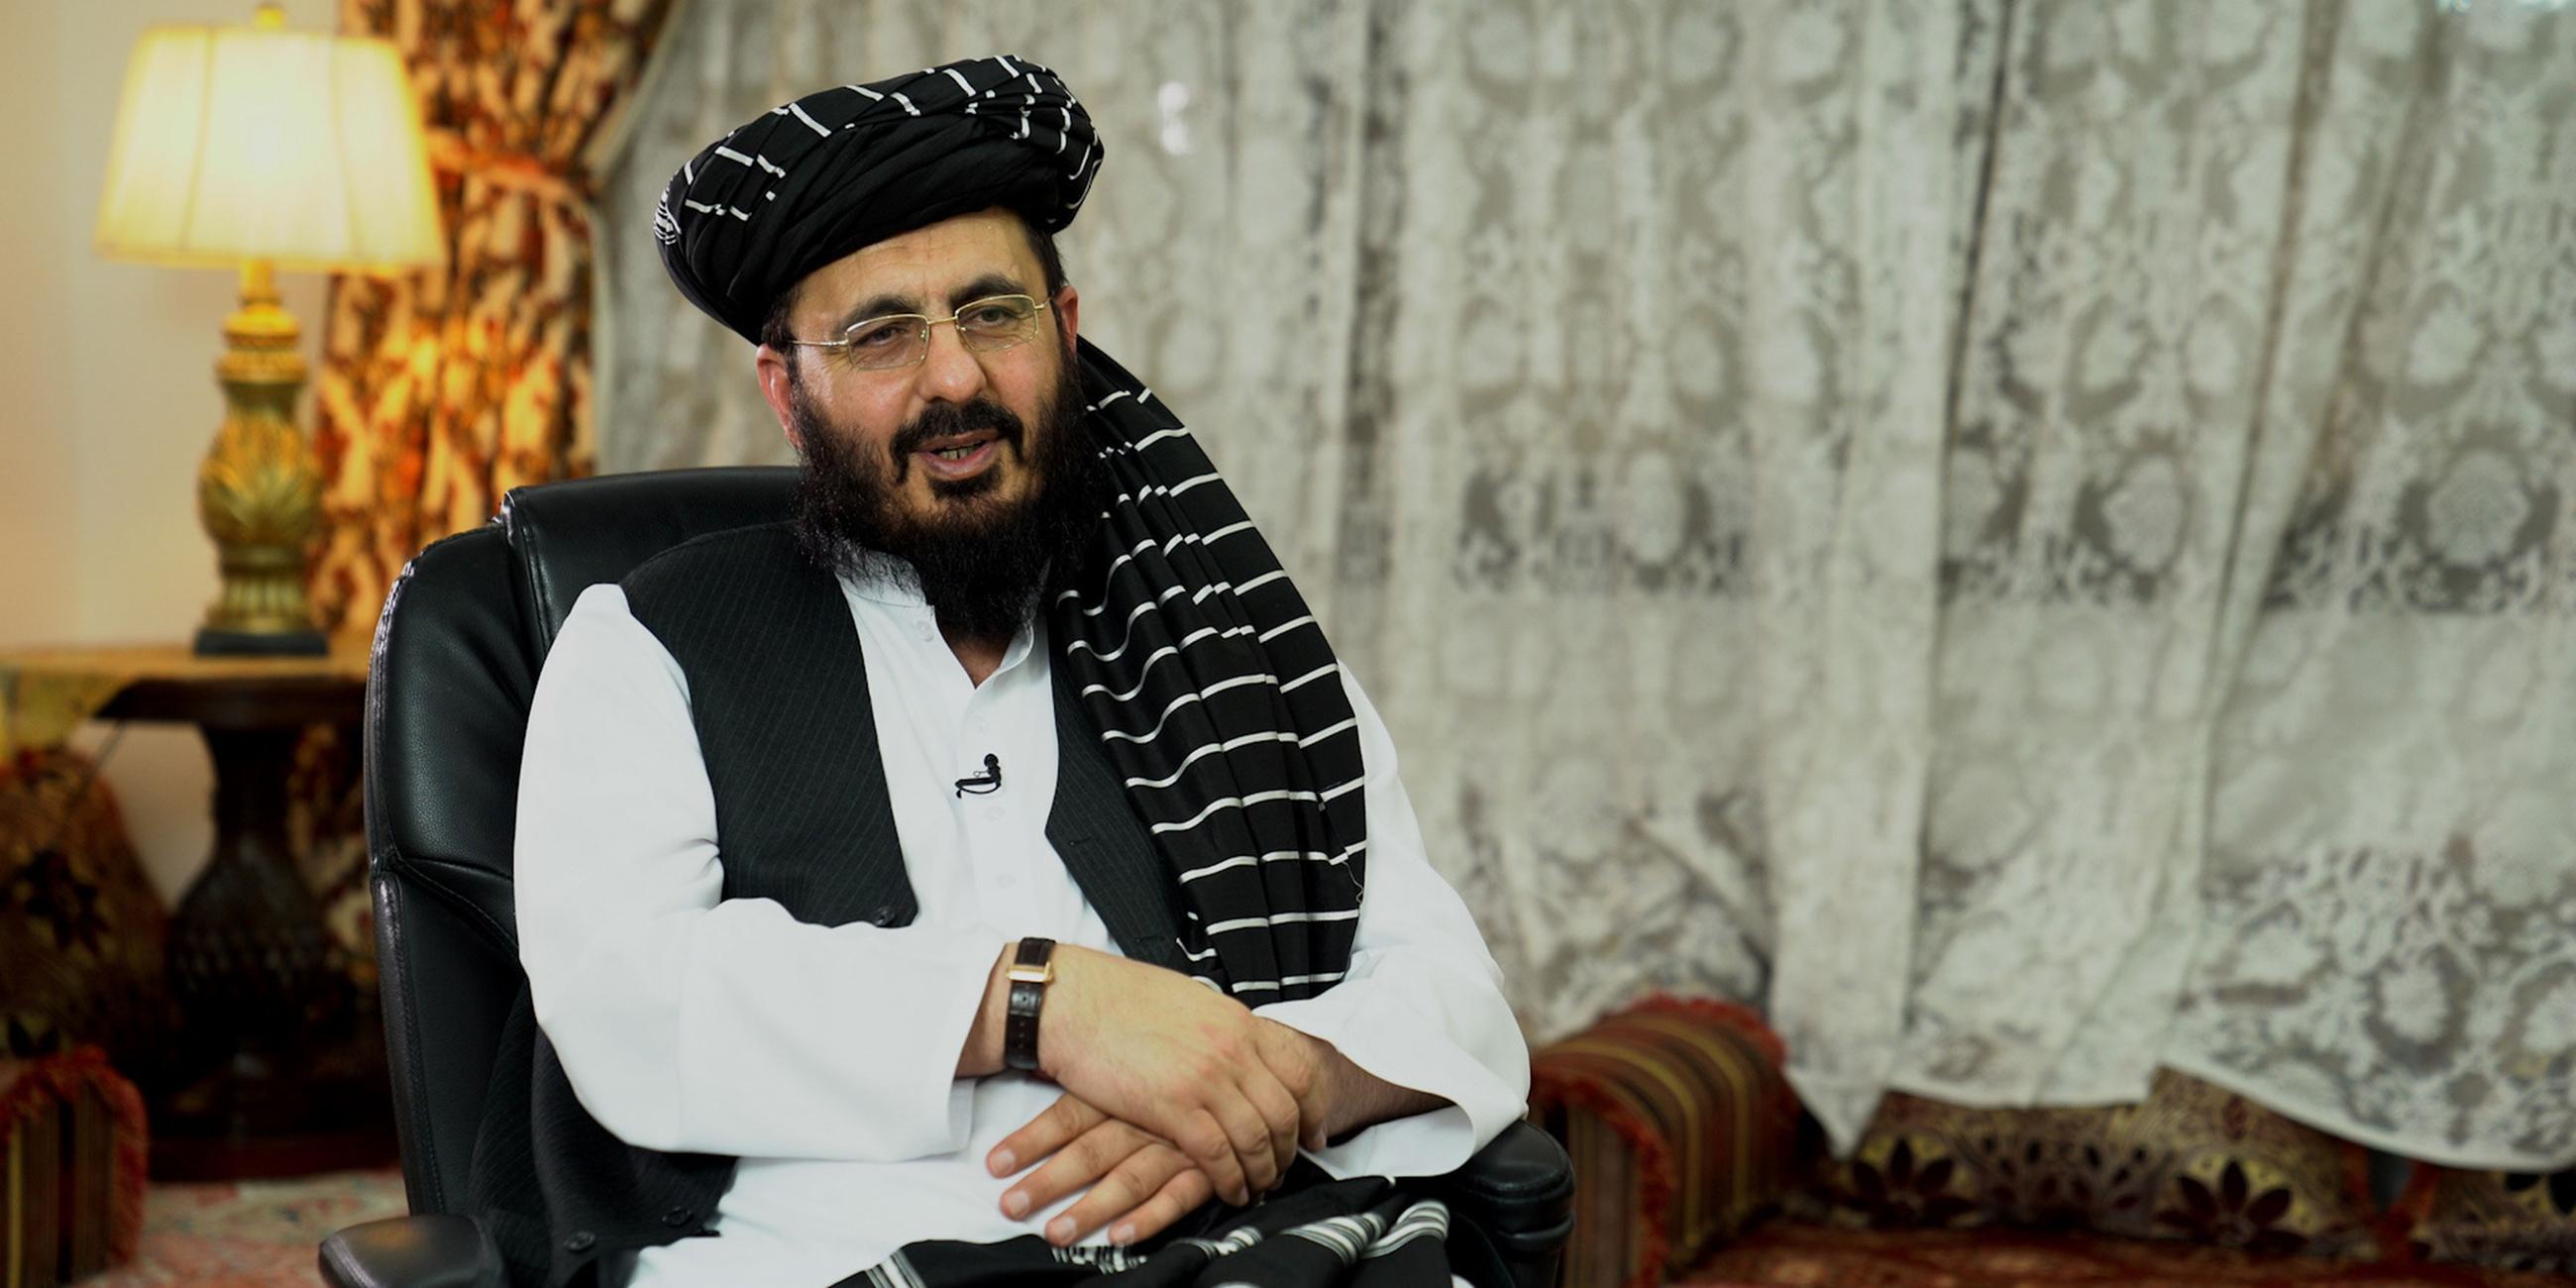 Mohammad Nabi Omari sitzt auf einem Sessel in einem Wohnzimmer. Er trägt weiße Kleidung, eine Brille, einen Bart und einen schwarzen Turban.